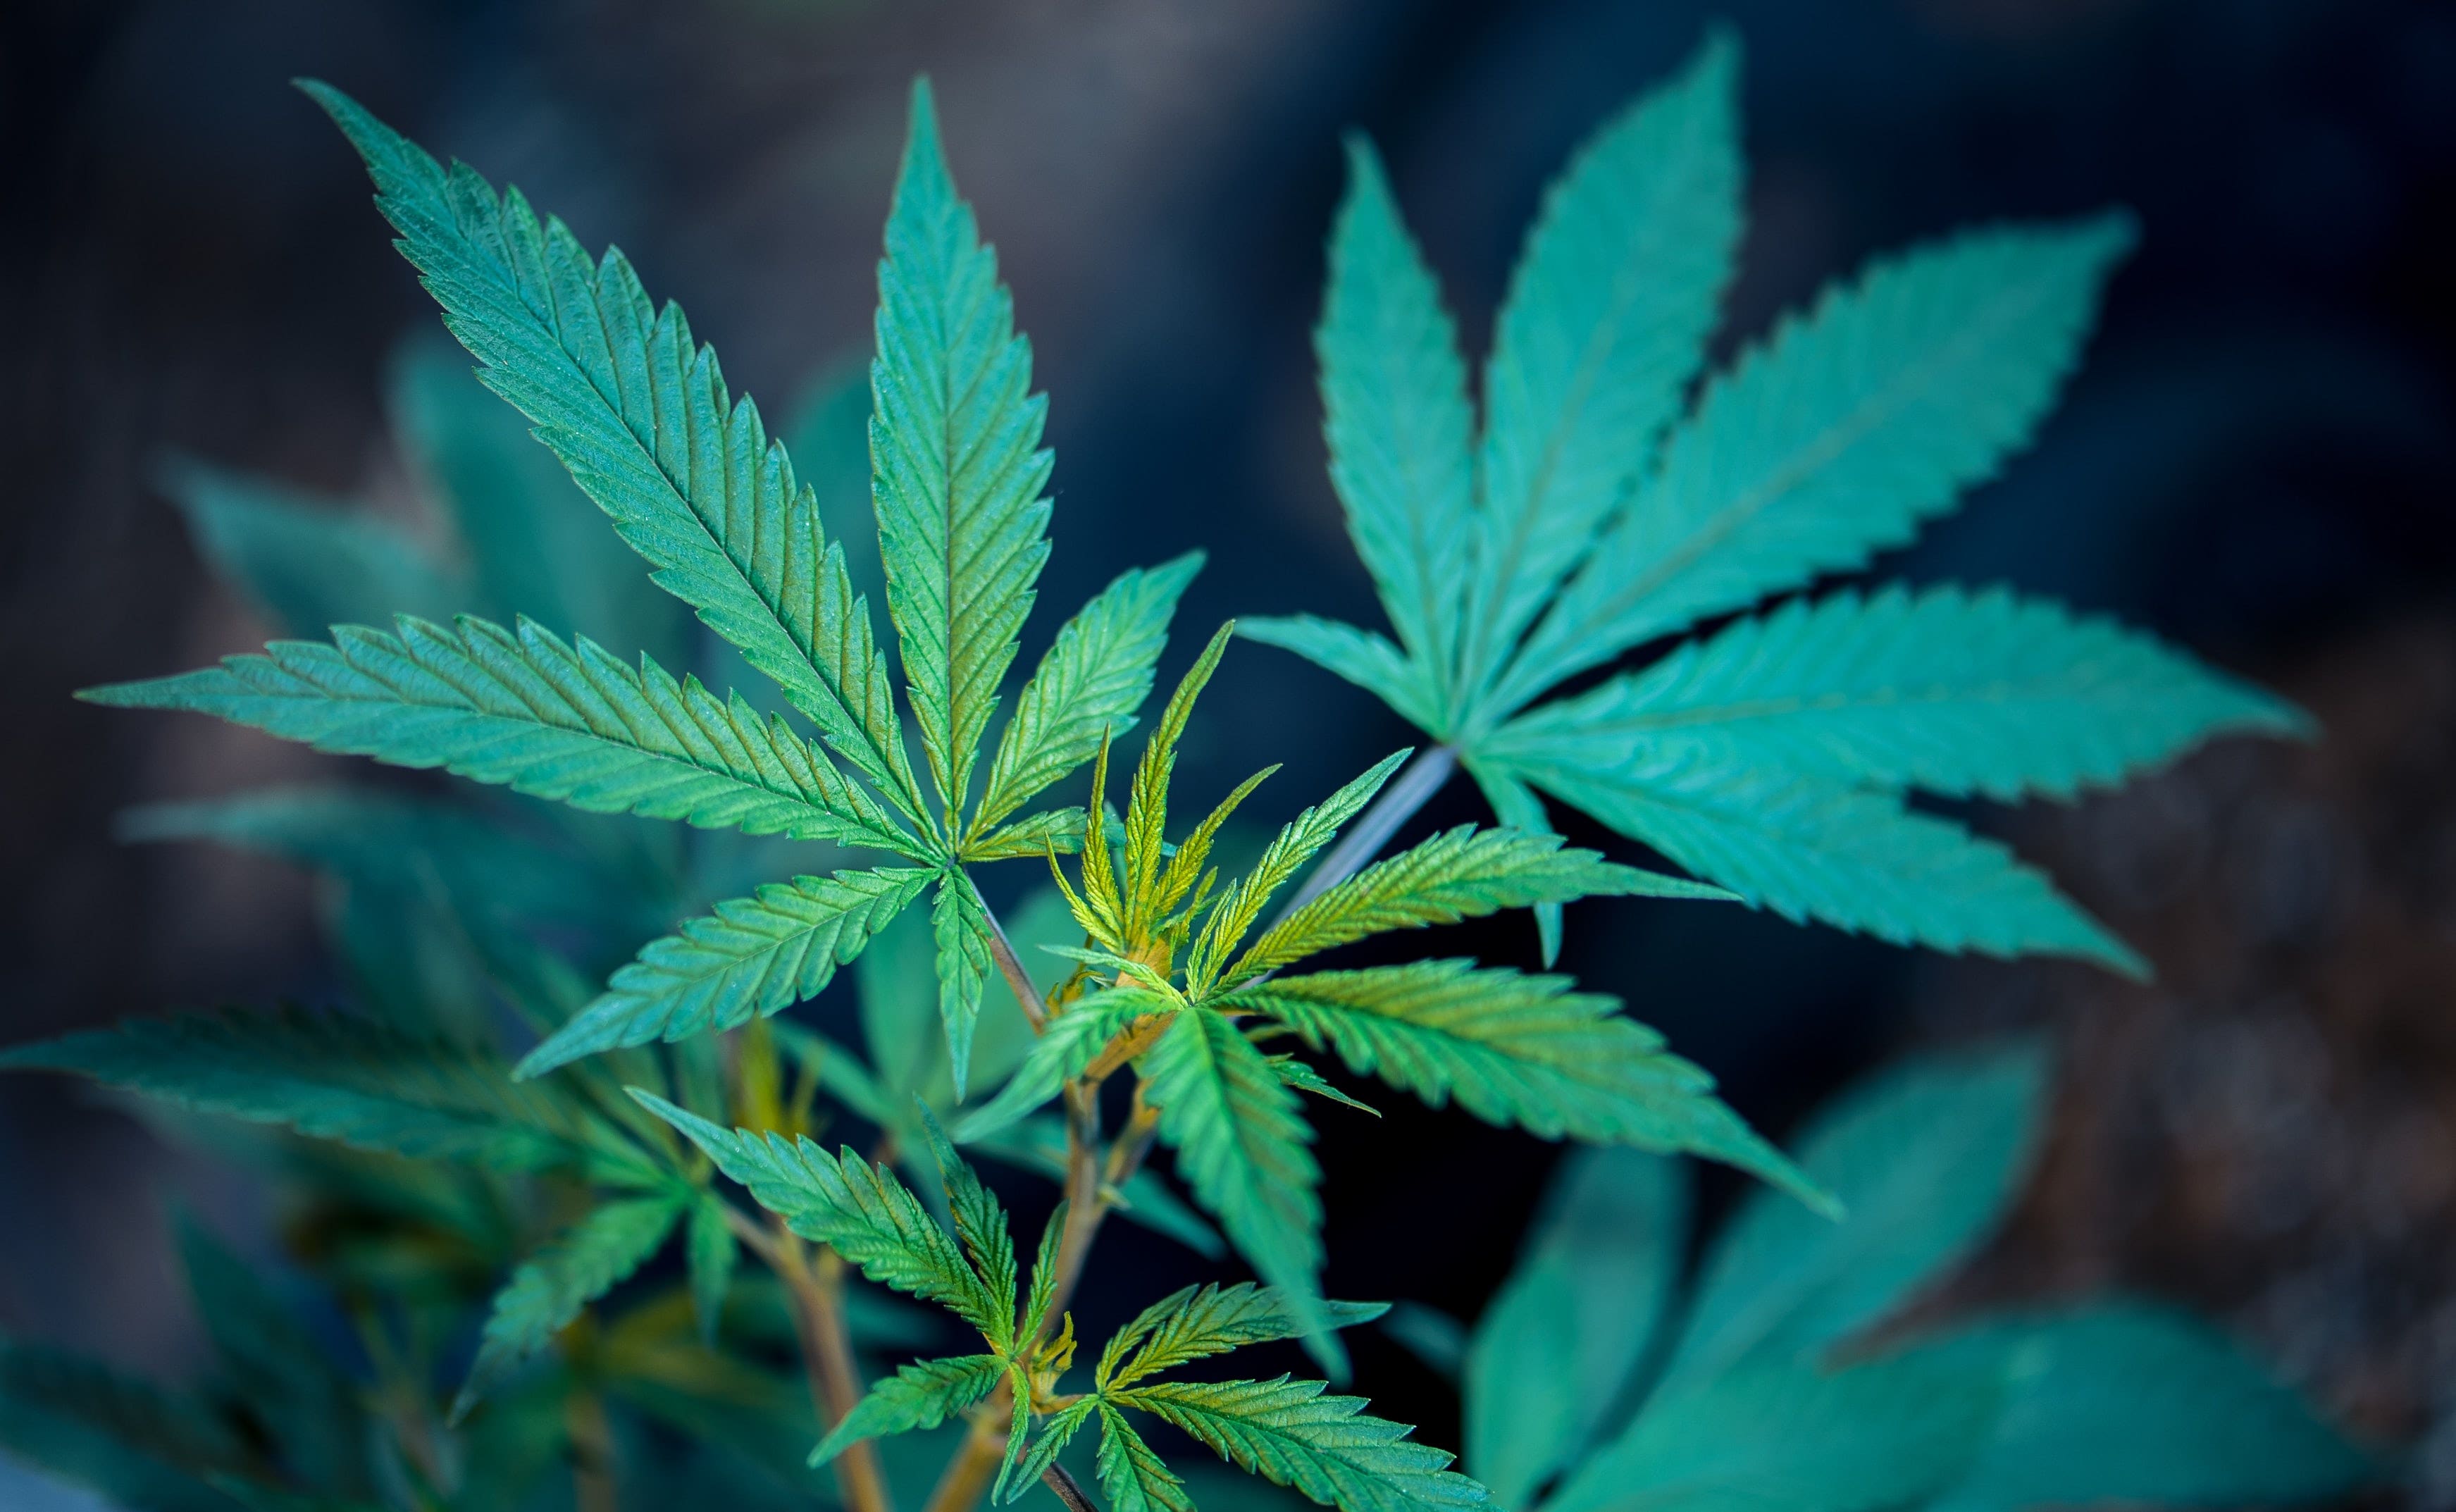 Senators Take Bipartisan Action To Legalize Medical Marijuana In North Carolina